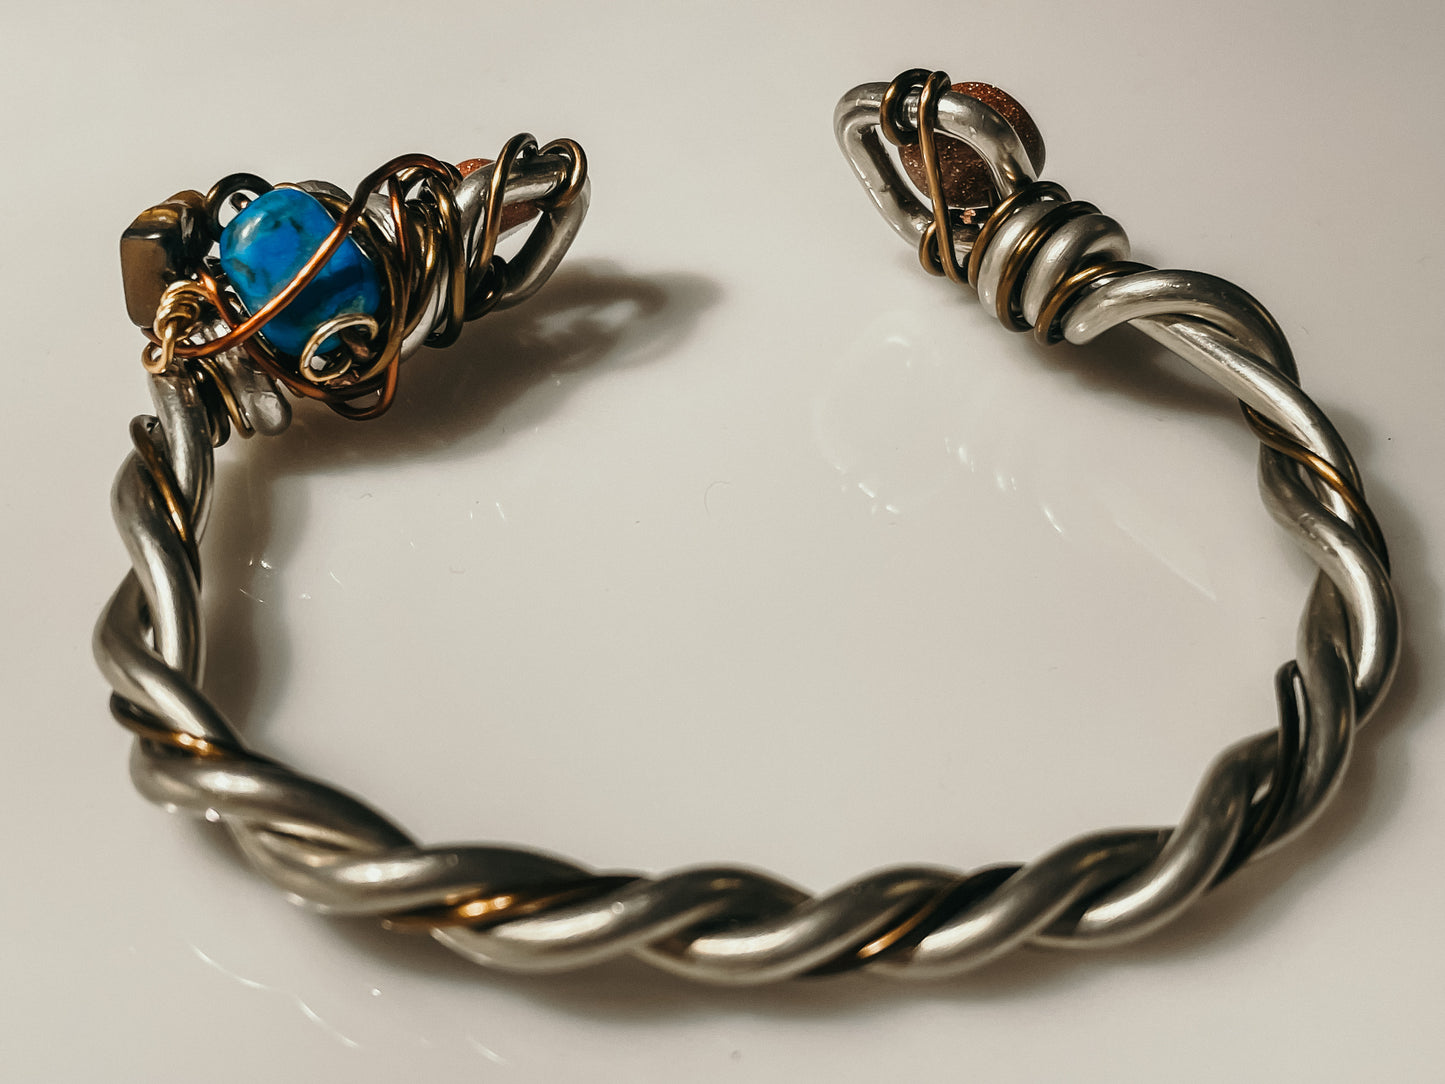 Santa Fe bracelet